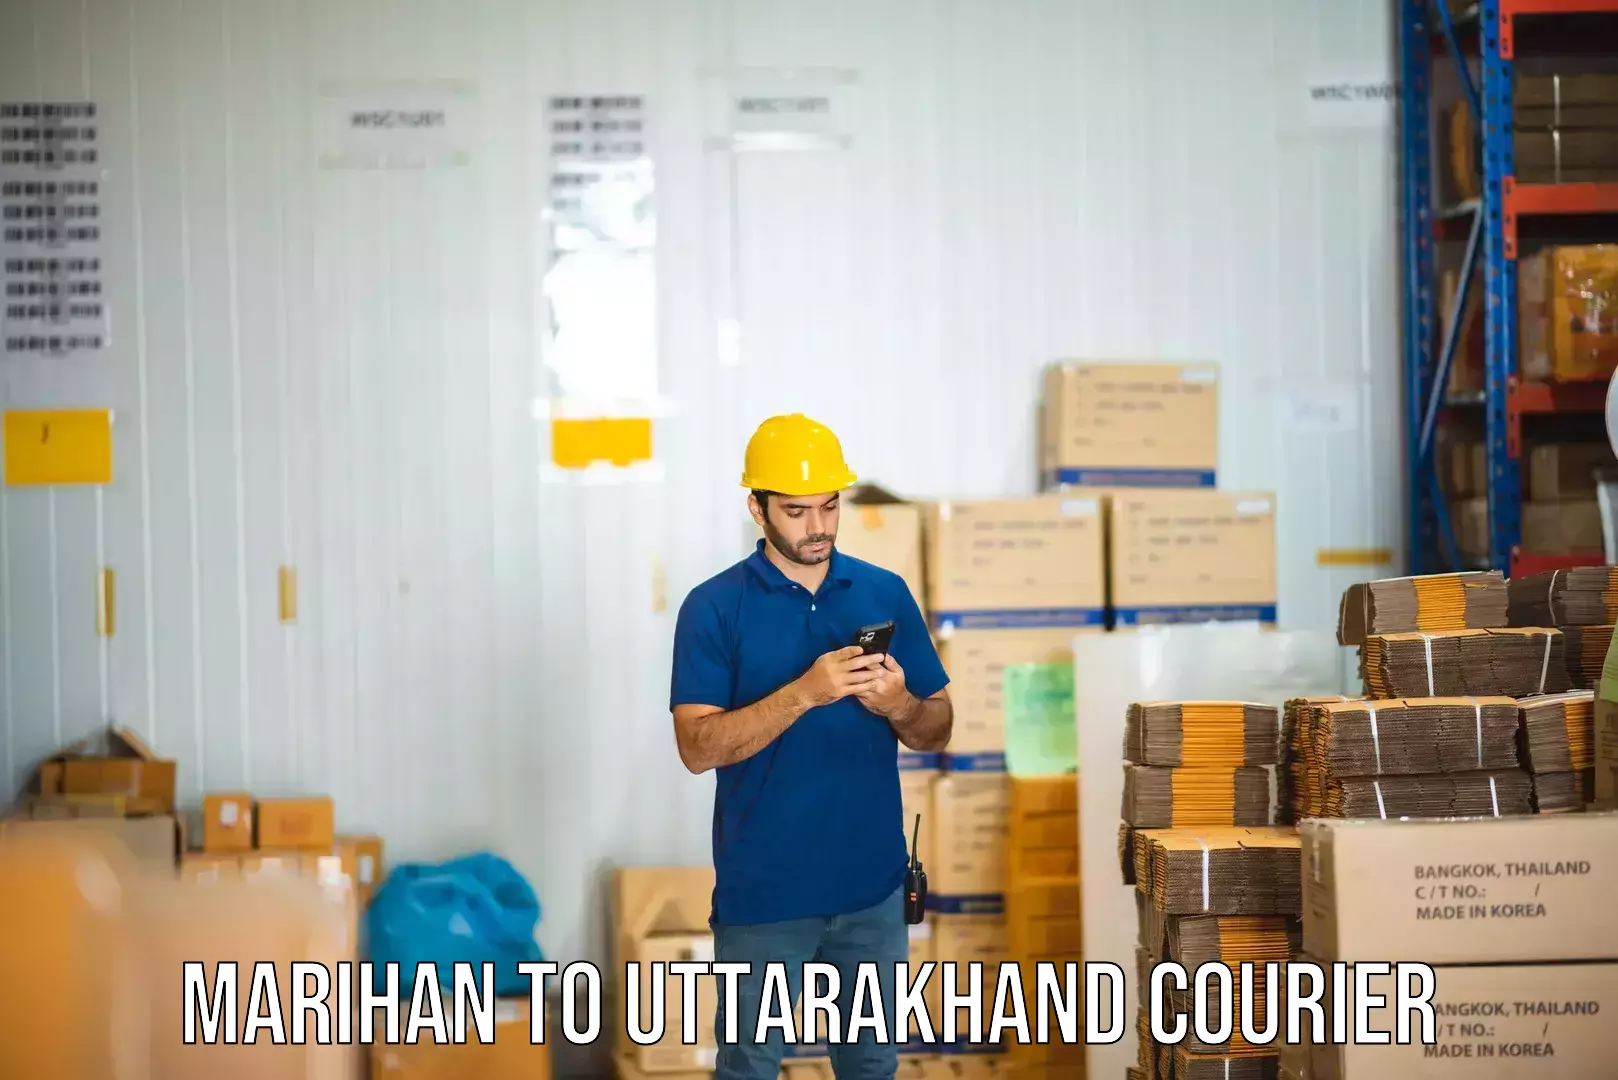 Bulk courier orders Marihan to Uttarakhand